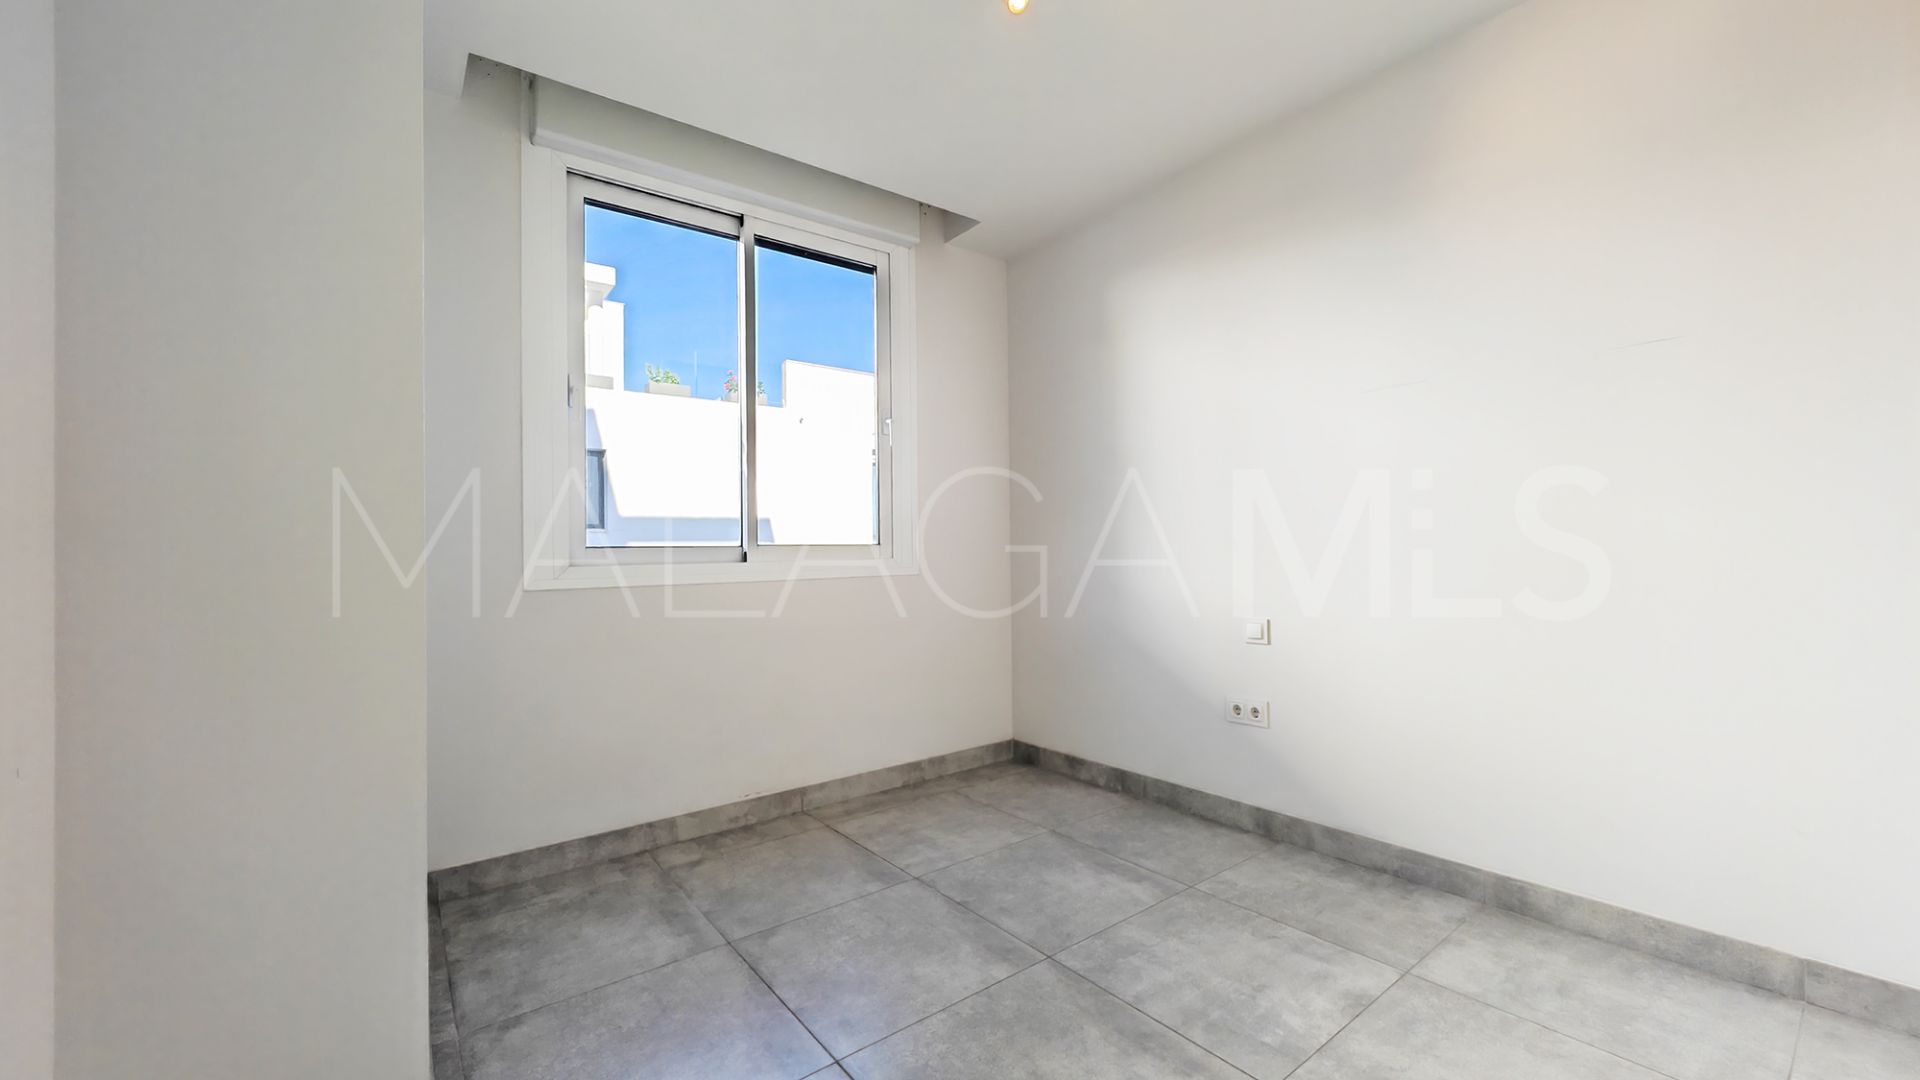 Buy Cala de Mijas ground floor apartment